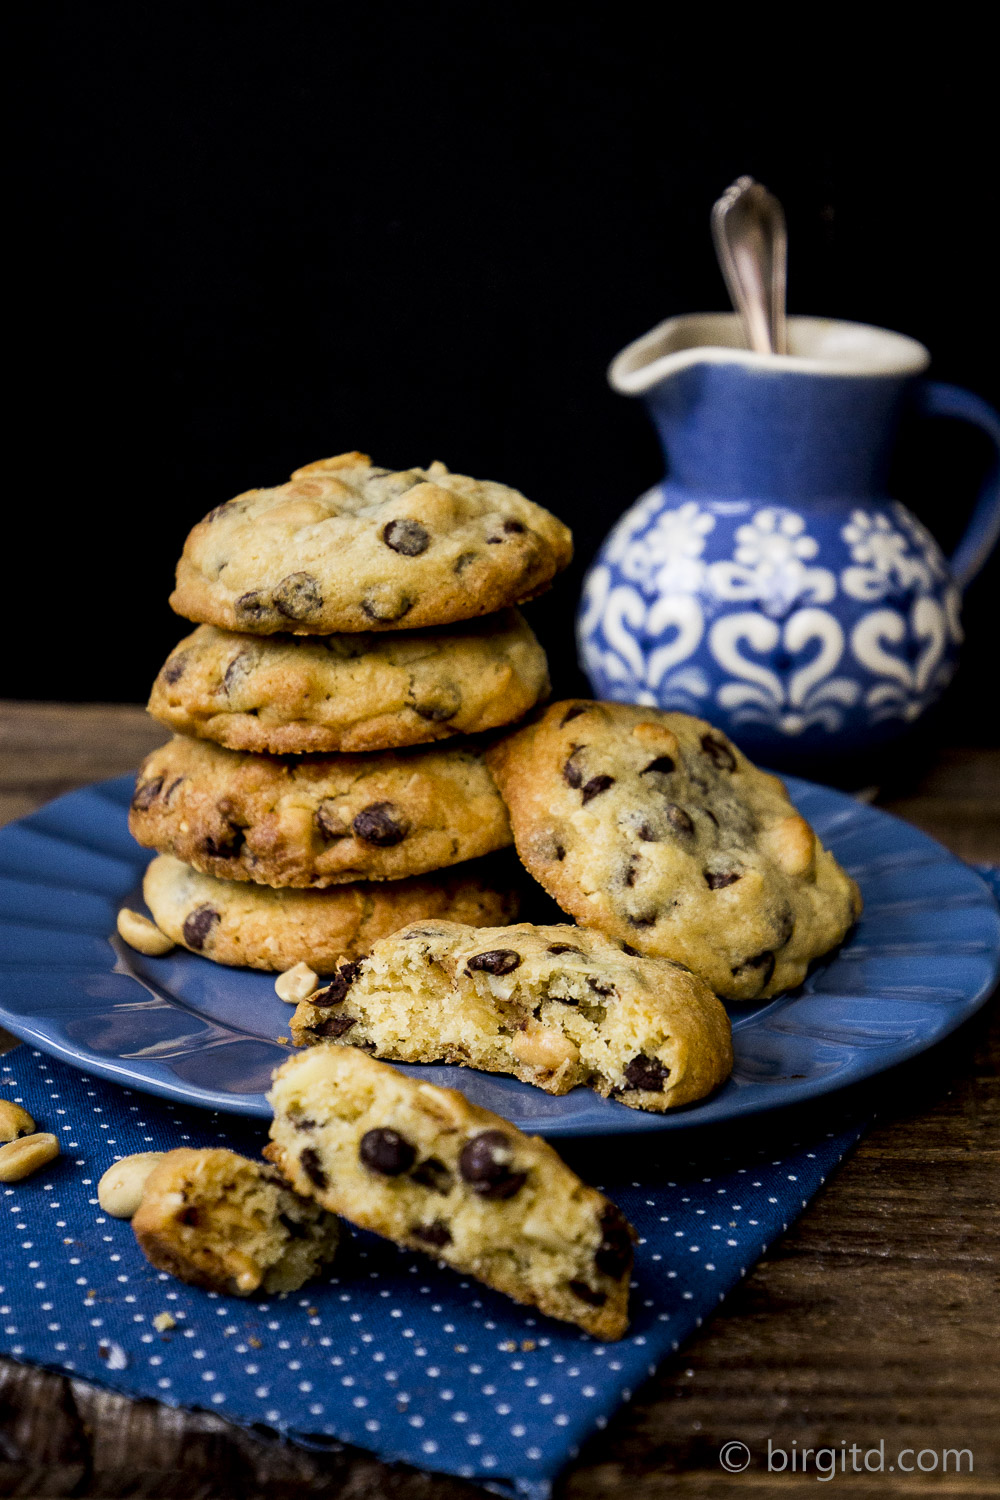 Schoko-Erdnuss-Cookies-Cookies